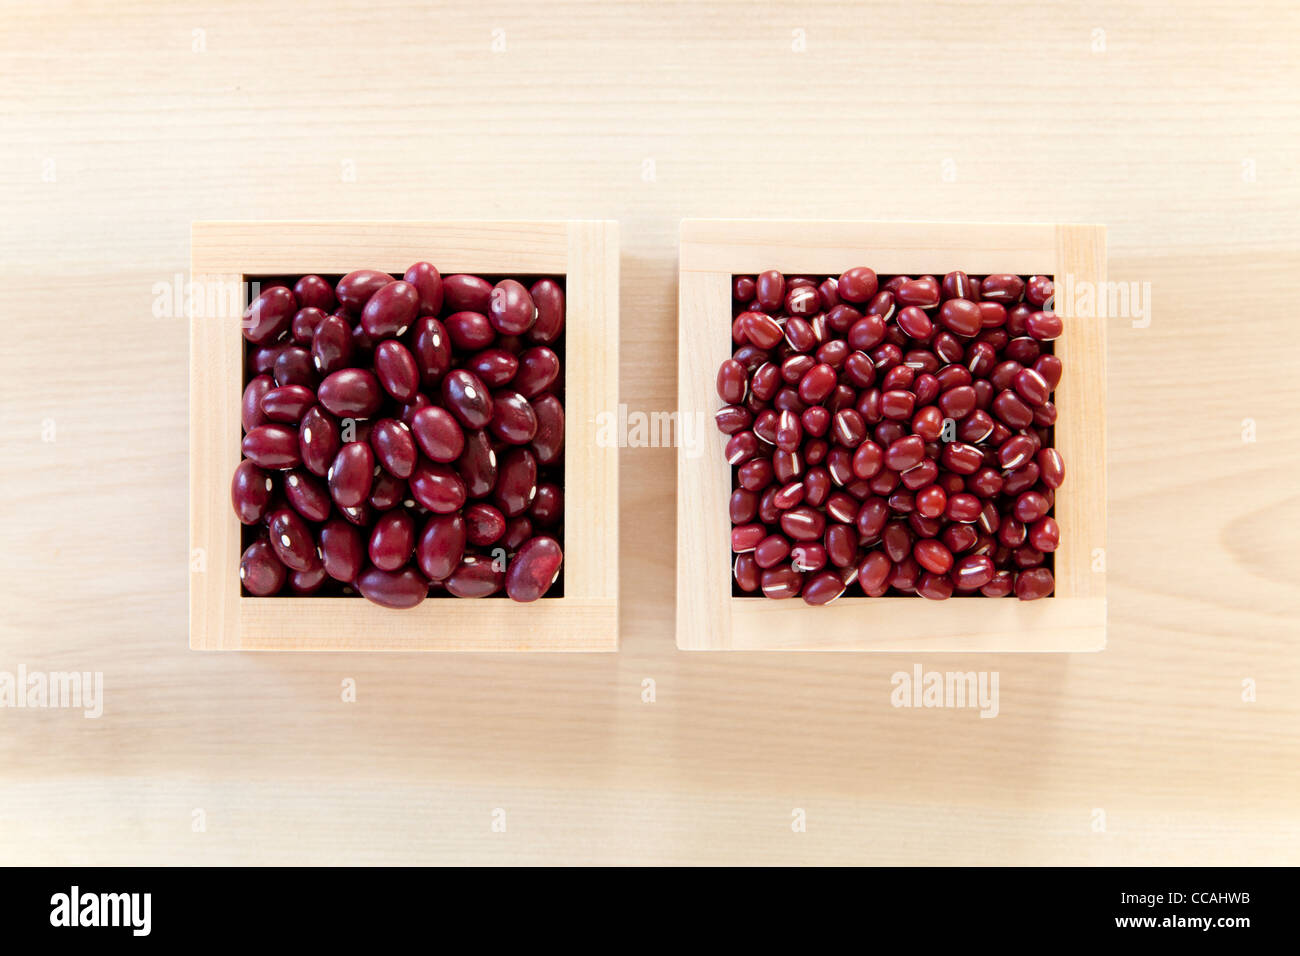 Two Boxes of Adzuki Beans Stock Photo